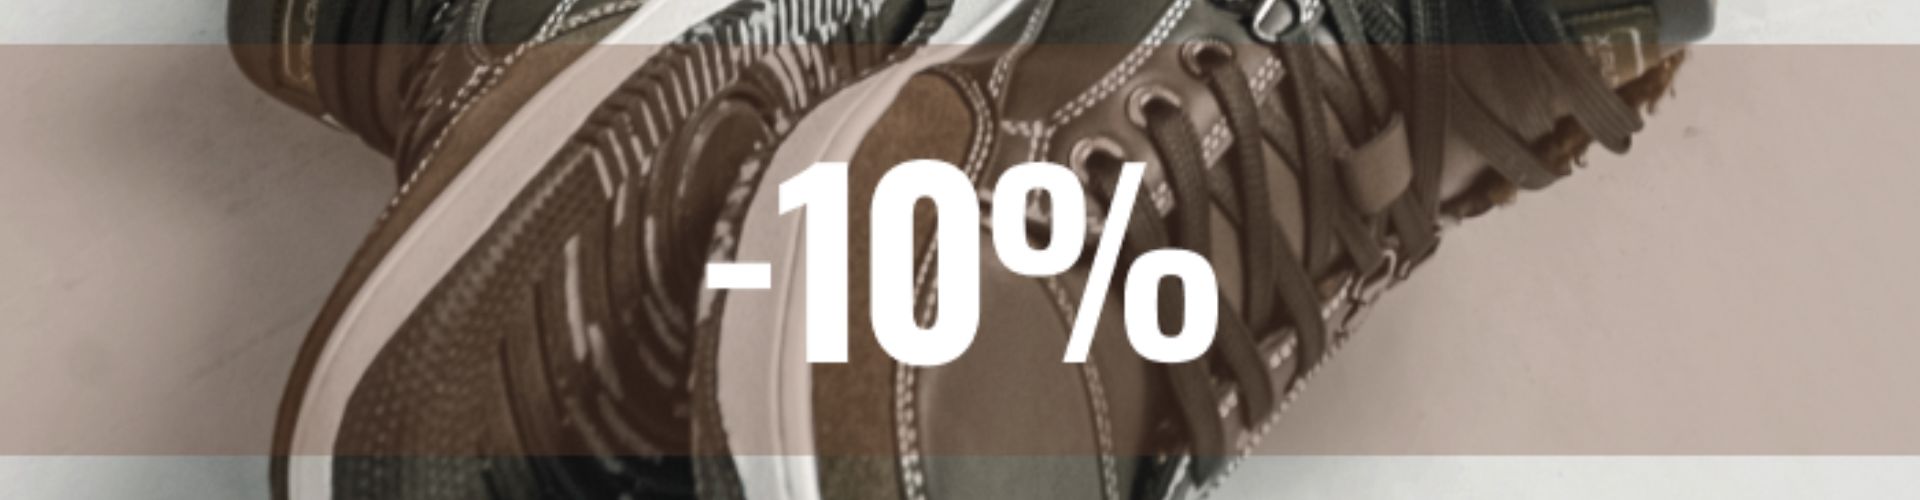 Скидка 10% на мужскую обувь в Мегатоп